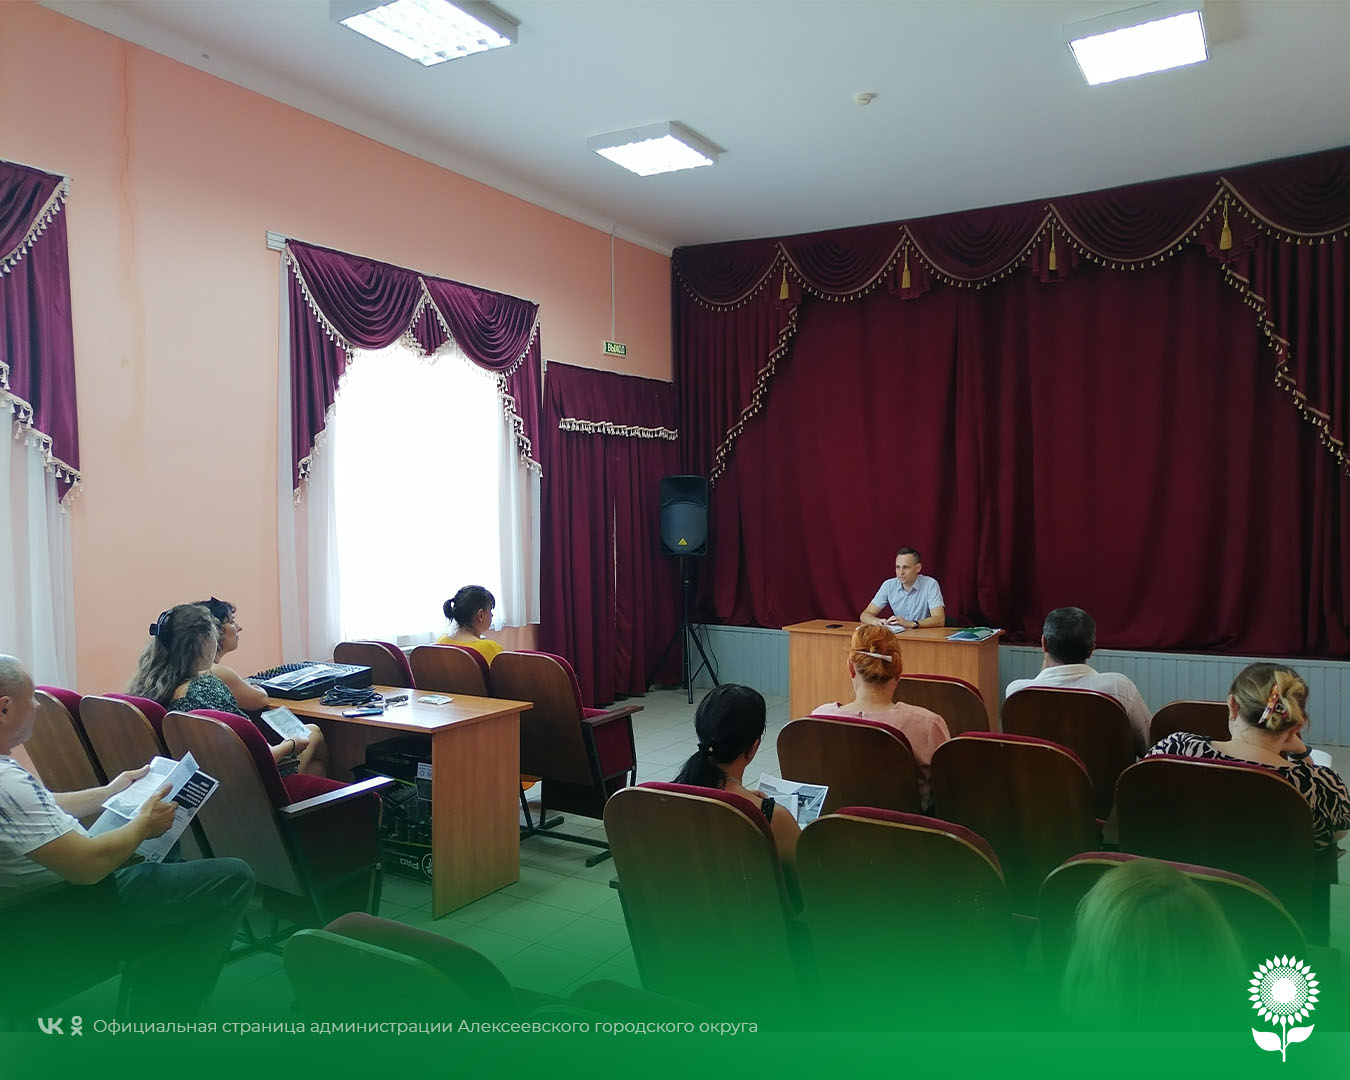 В селе Глуховка состоялся открытый диалог с гражданами Алексеевского городского округа по развитию предпринимательства.